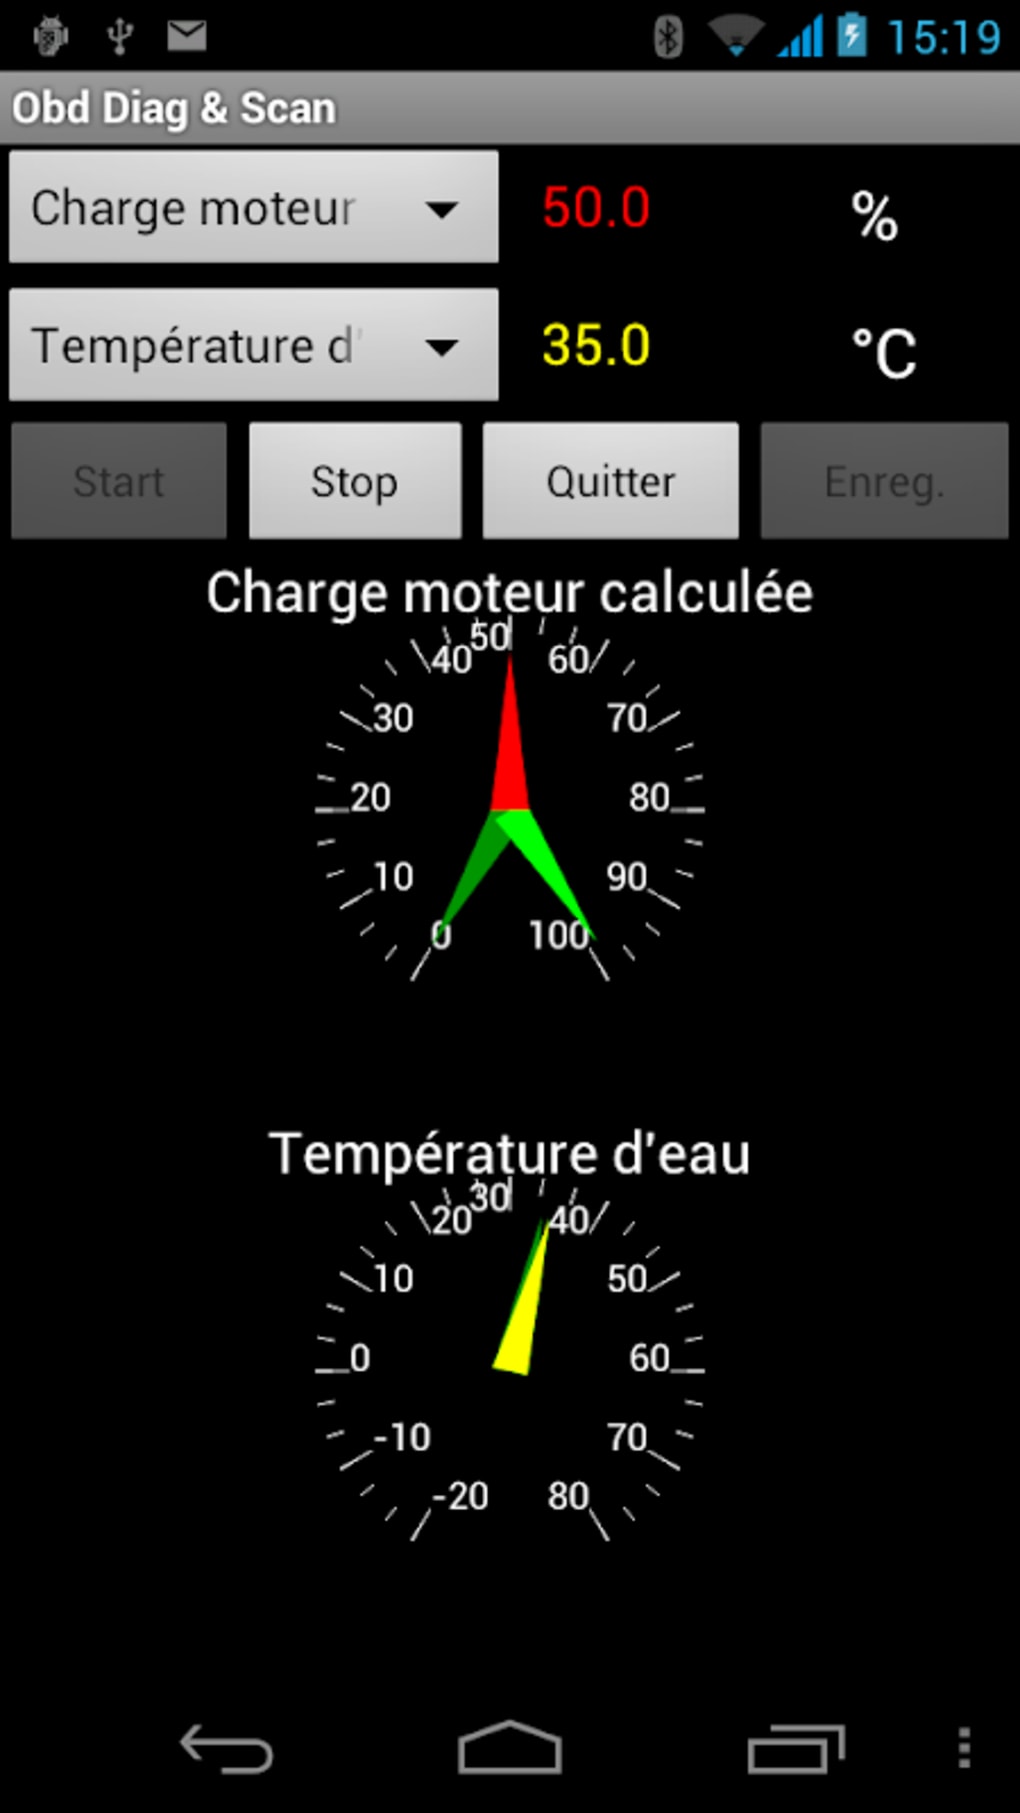 Logiciel diagnostic auto français  Obd Diag & Scan  en version Android. 